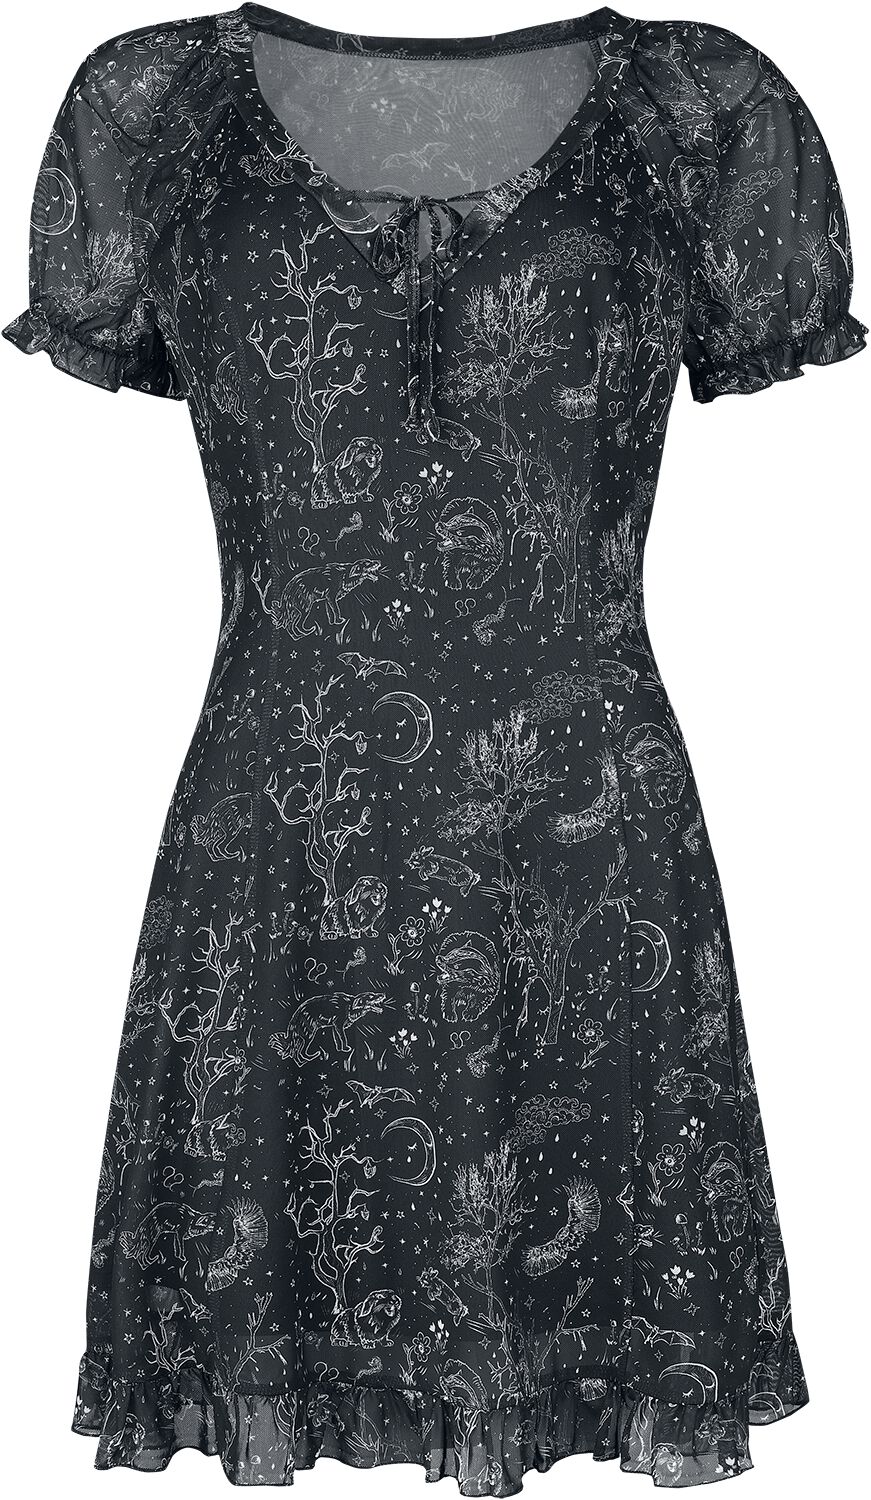 Jawbreaker Night Forest Mesh Dress Kurzes Kleid schwarz weiß in M